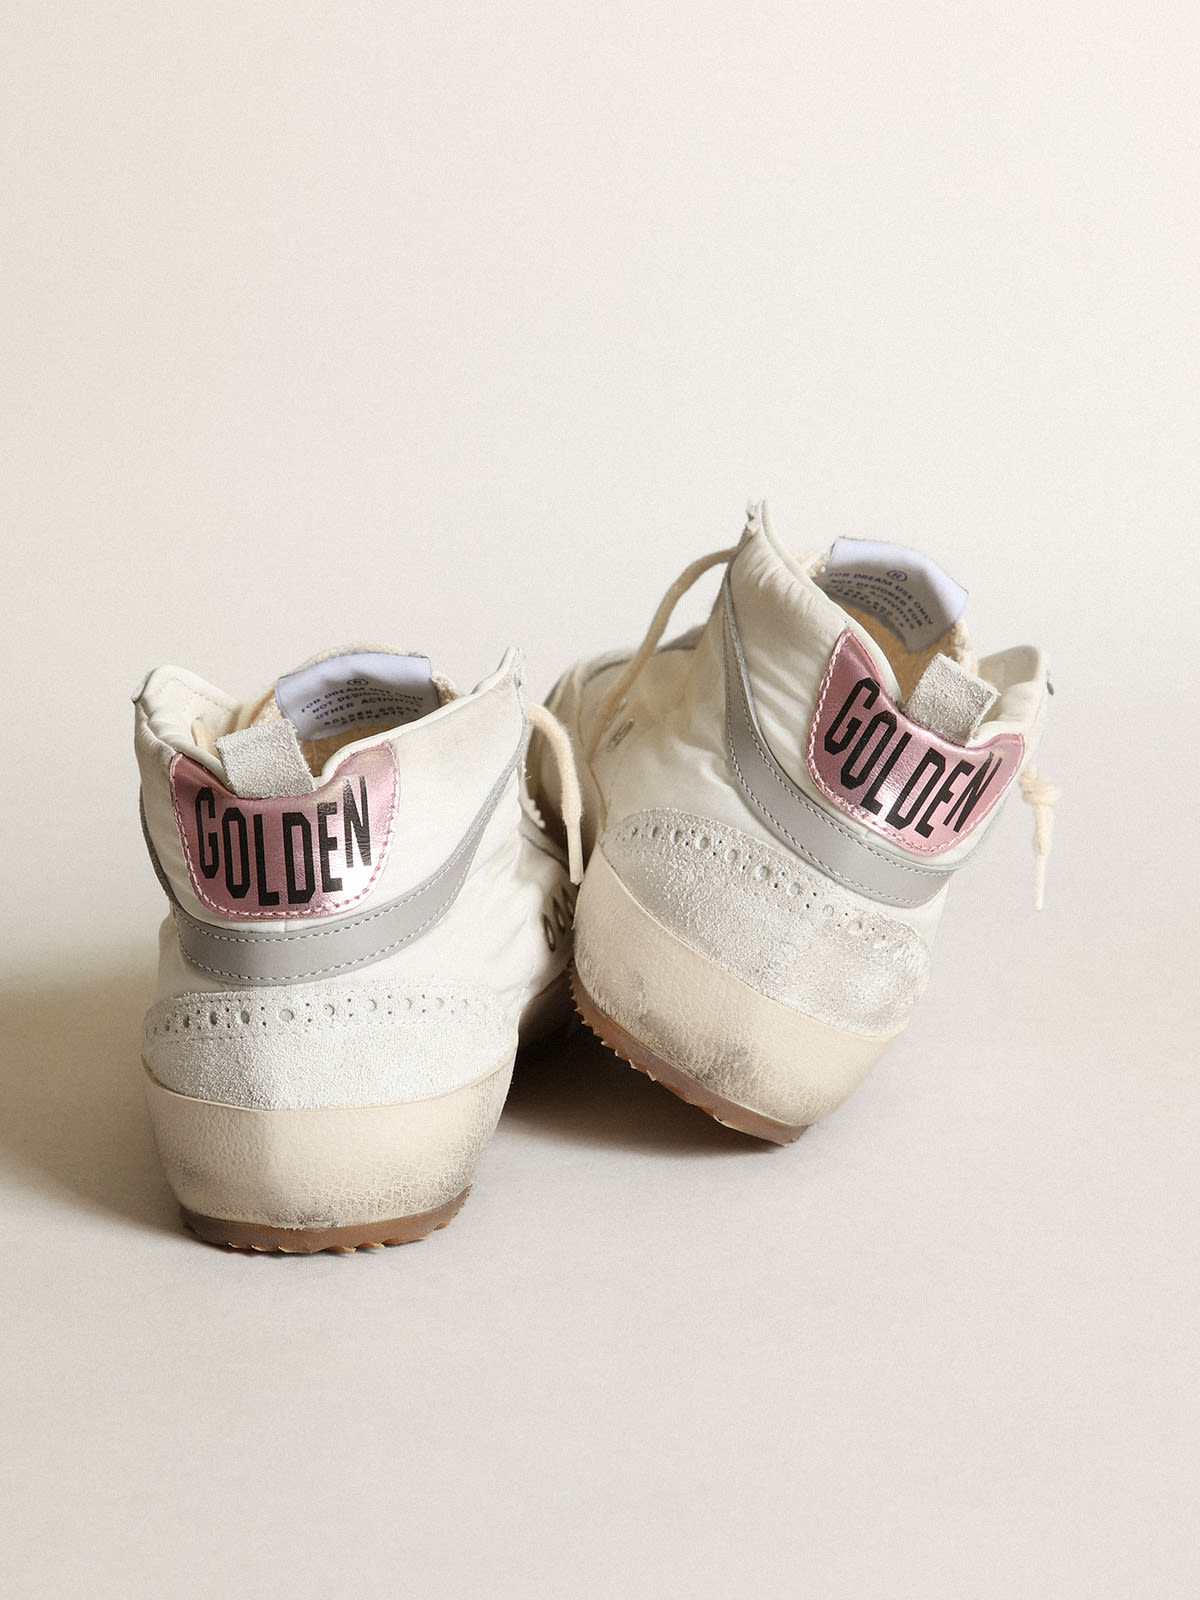 Golden Goose - Sneakers Mid Star LTD aus weißem Nylon mit Stern aus Cavallino-Leder mit Leo-Dessin und rosa Metallic-Leder an der Fersenpartie in 